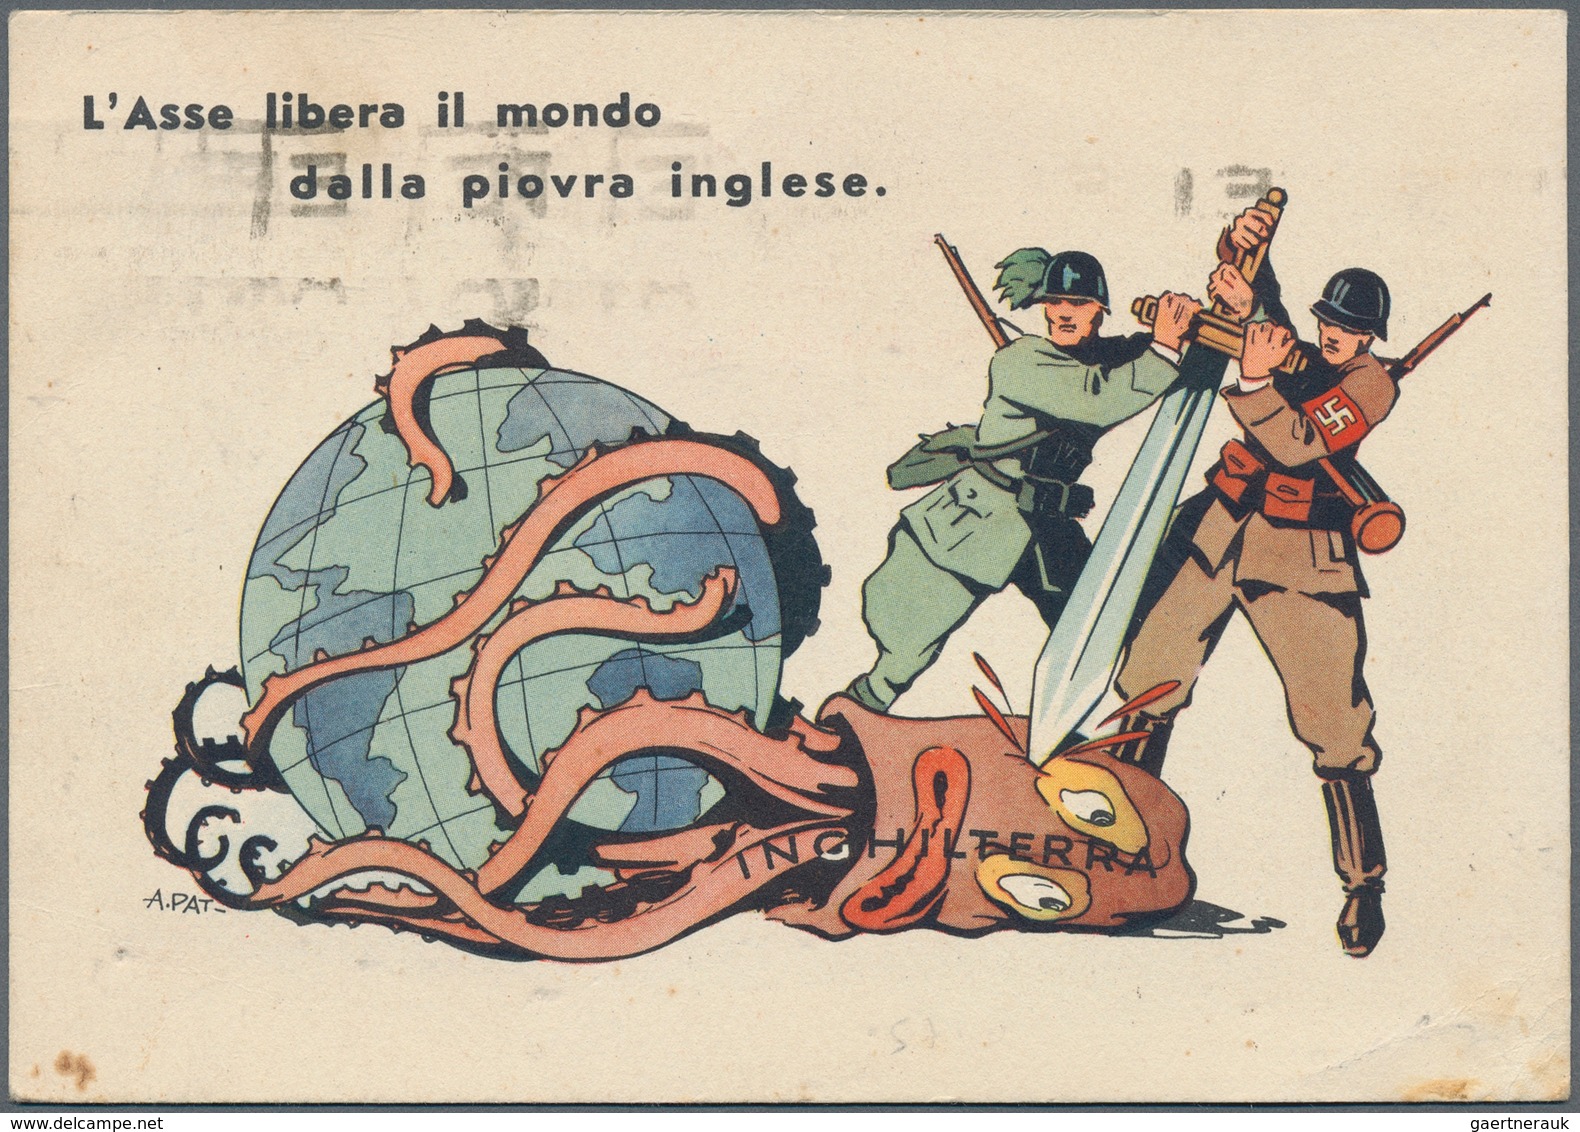 21642 Ansichtskarten: Alle Welt: ITALIEN: 1930/45, interessante Sammlung "Propaganda- und Werbekarten" mit